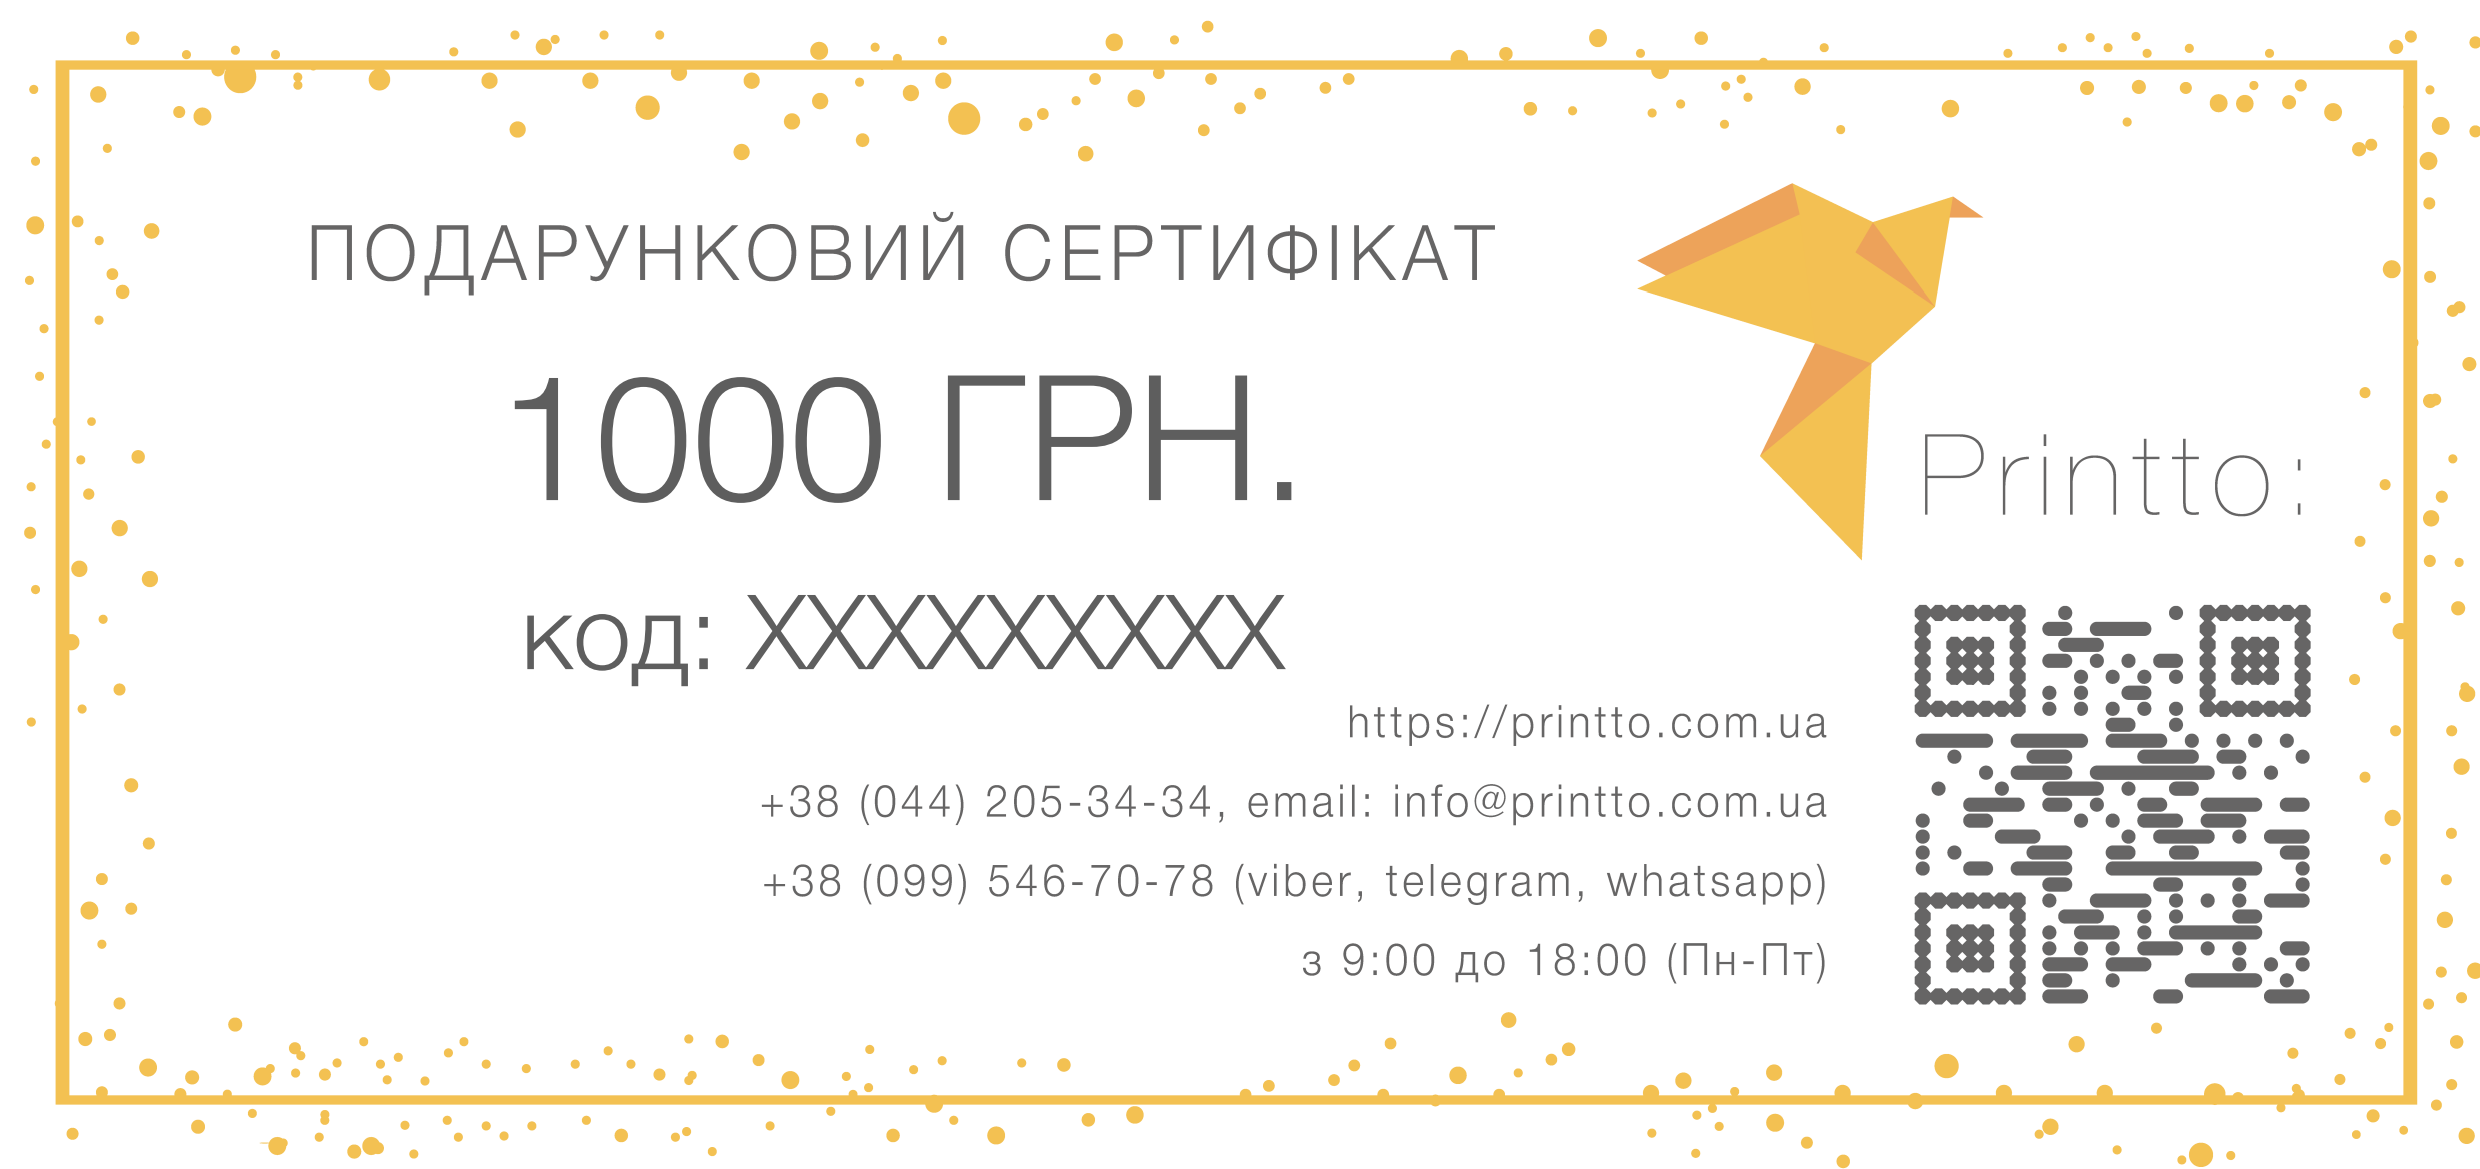 Подарунковий сертифікат на 1000 грн. | PrintTo: